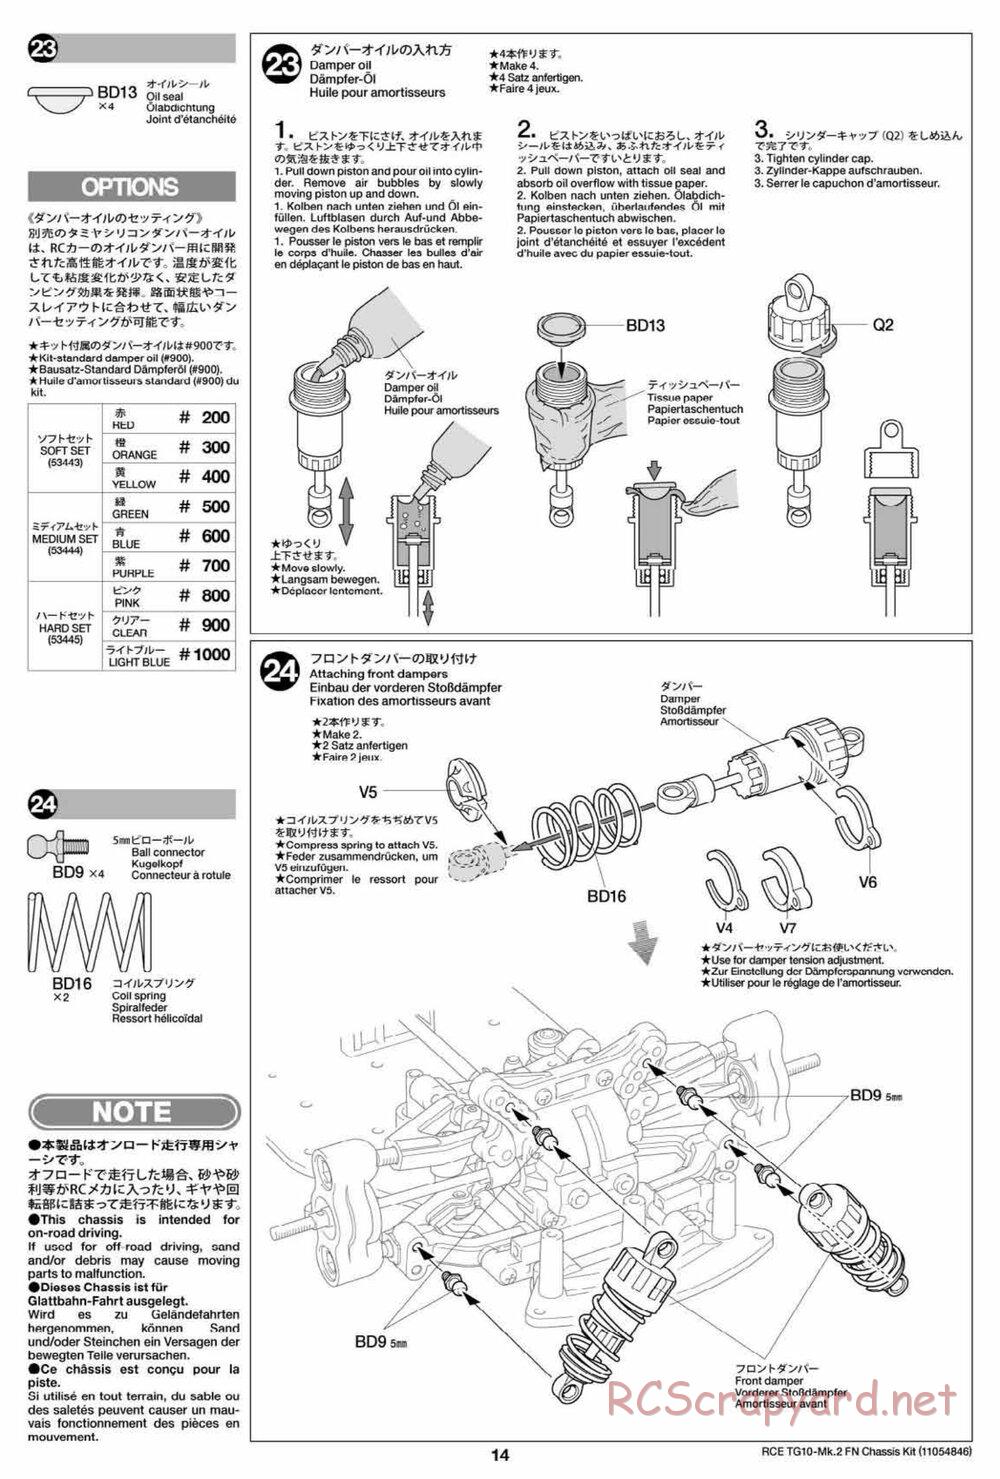 Tamiya - TG10 Mk.2 FN Chassis - Manual - Page 14